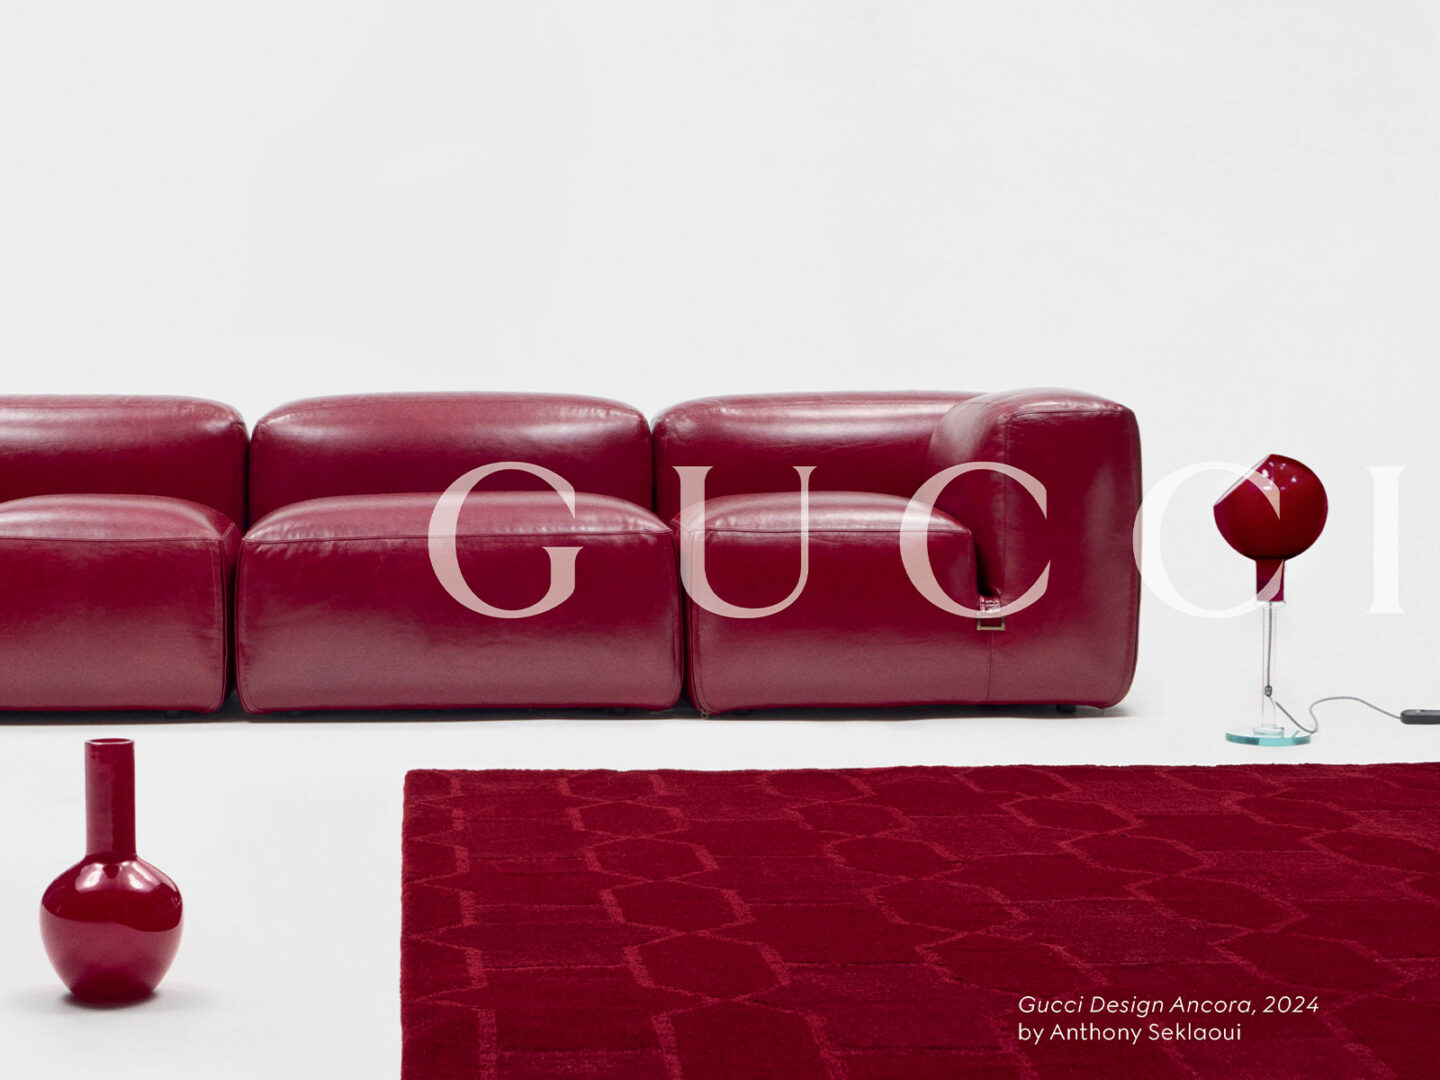 Estos son los 5 iconos del diseño que presenta Gucci Design Ancora